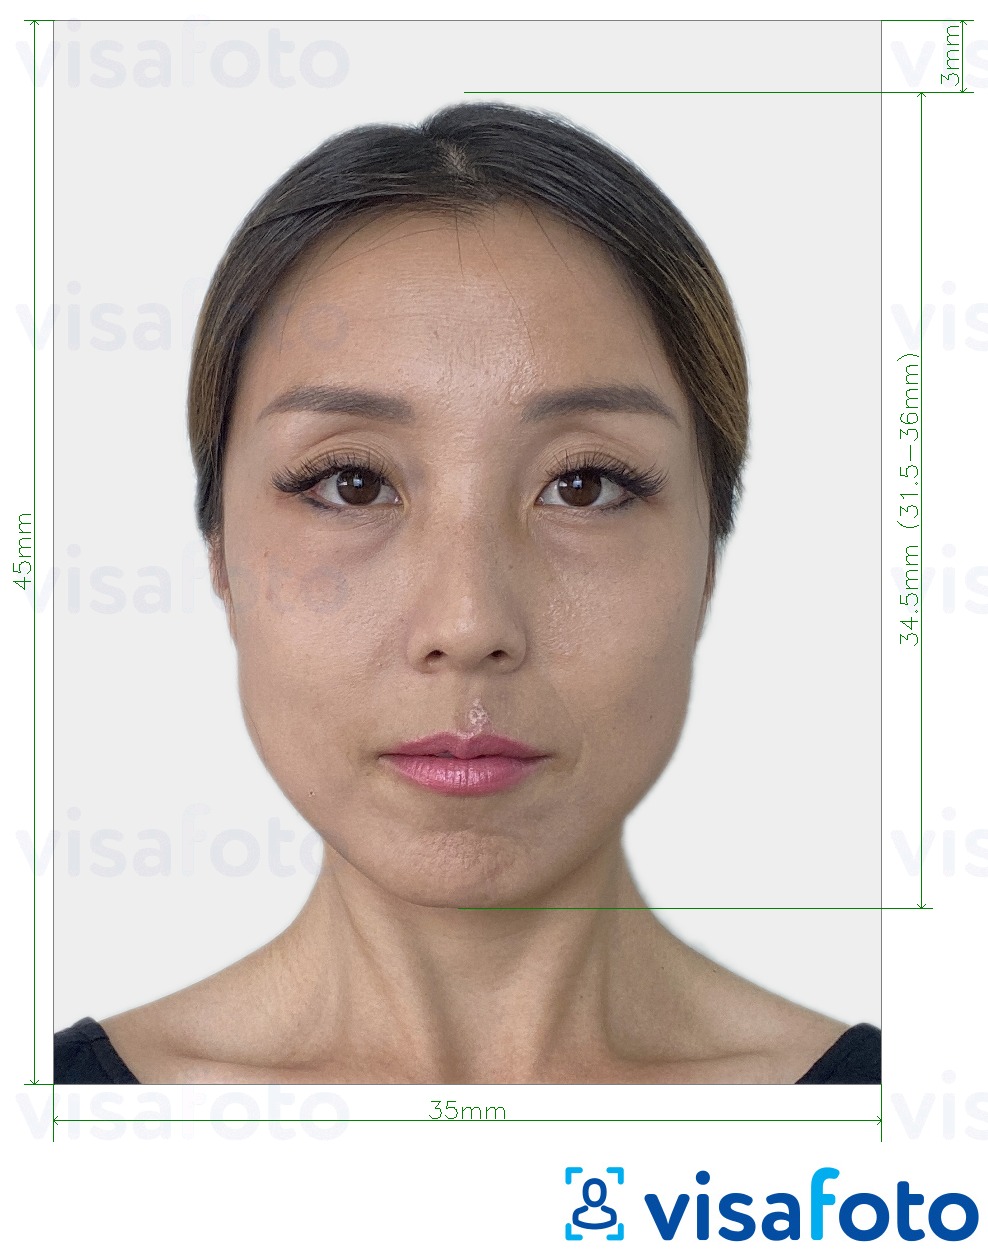 Příklad fotografie Jižní Korea Visa 35x45 mm (3,5x4,5 cm) s přesnou specifikací velikosti